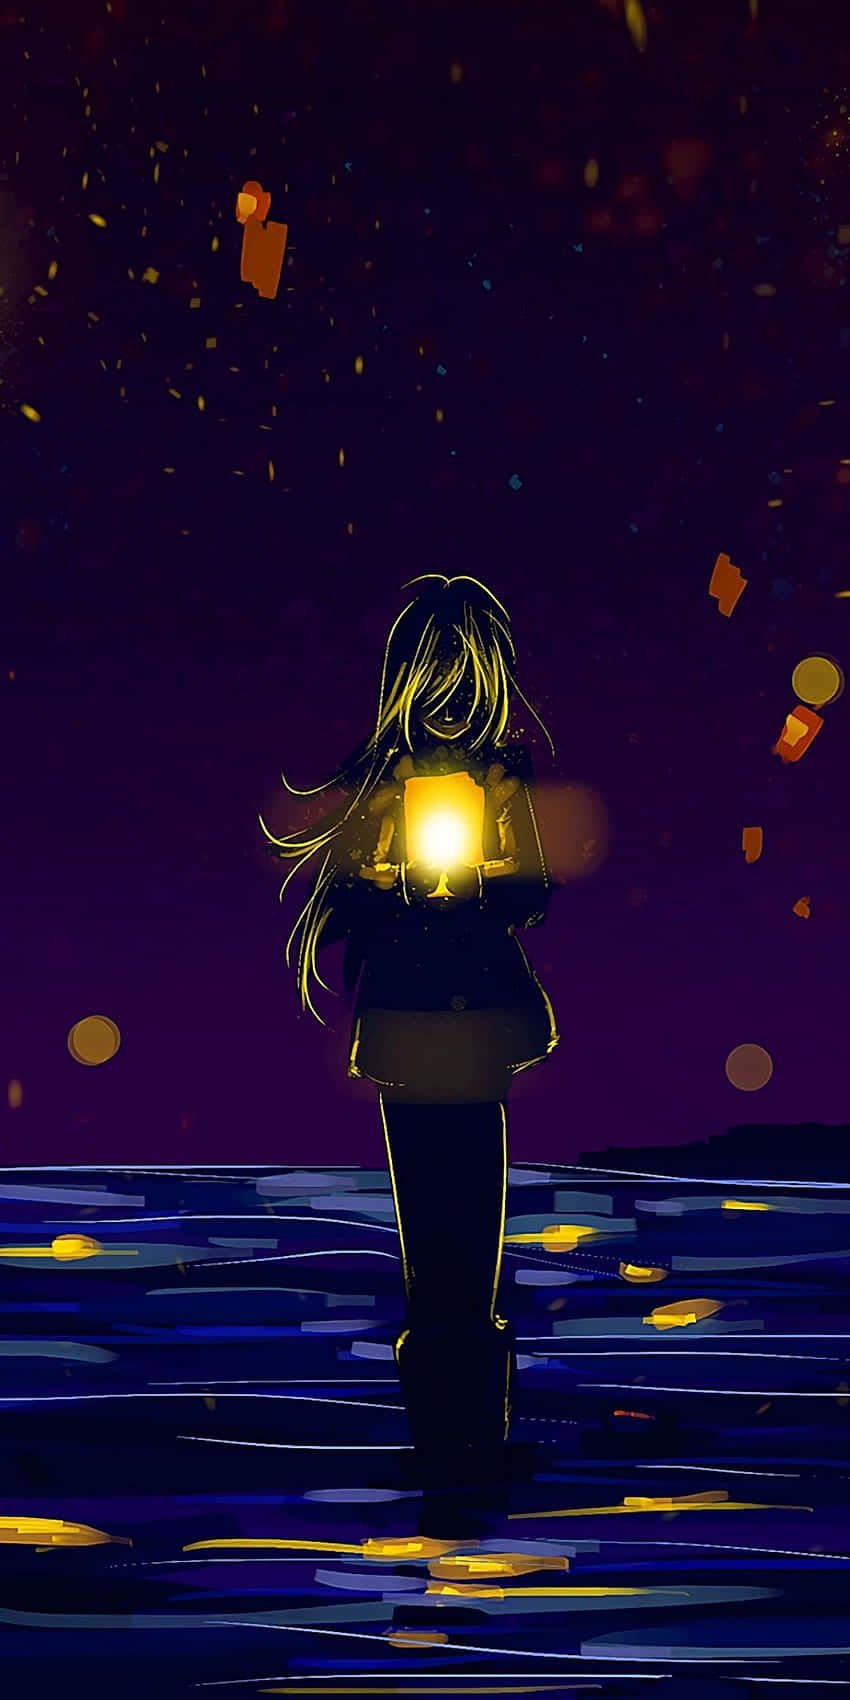 Broken Heart Anime Girl Holding A Lamp Wallpaper